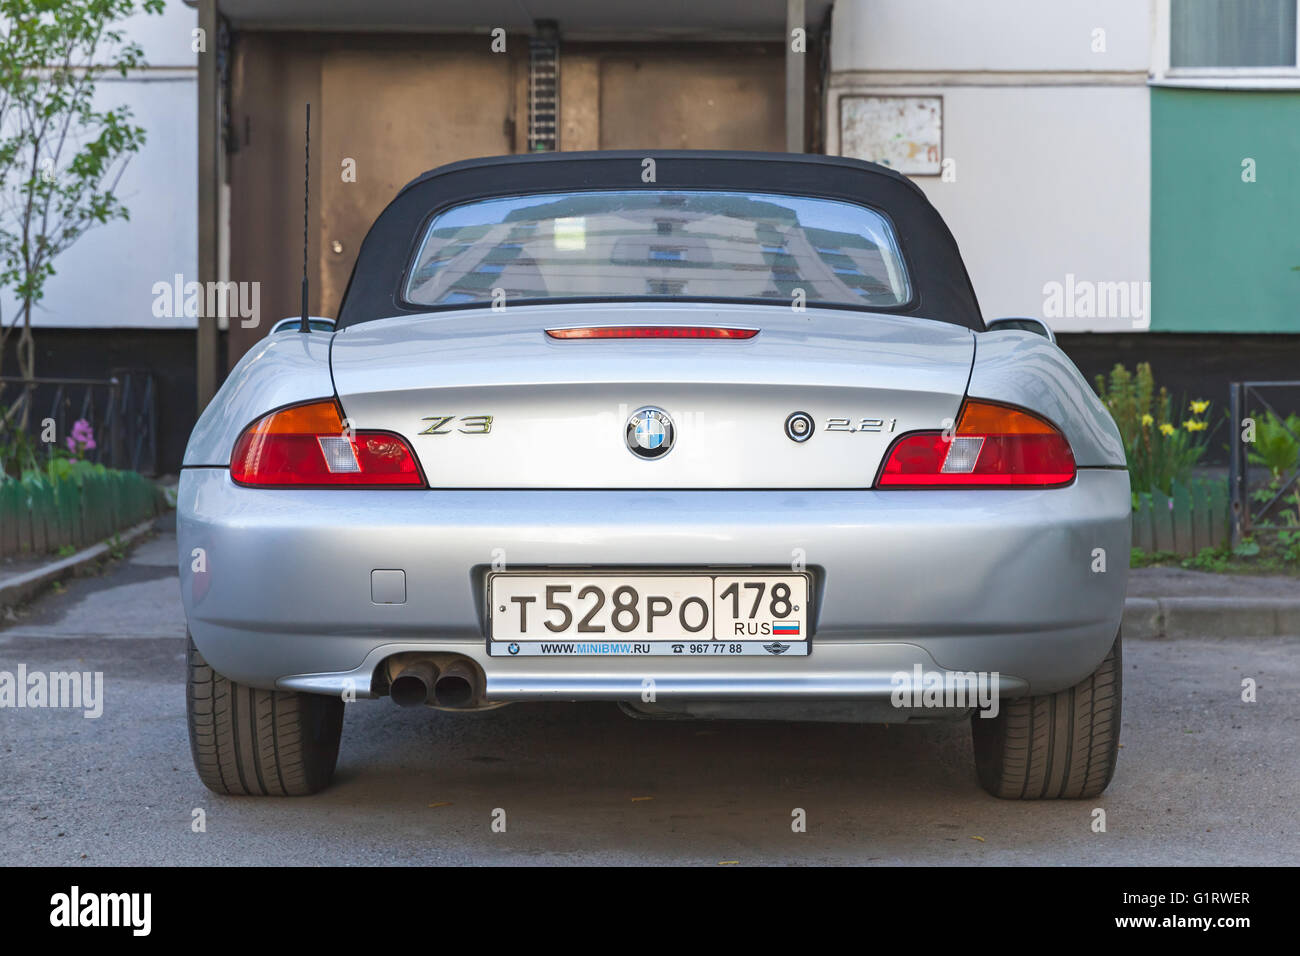 Saint-pétersbourg, Russie - 12 mai 2016 : Argent gris BMW Z3 location est garée sur le bord de la route, vue arrière Banque D'Images